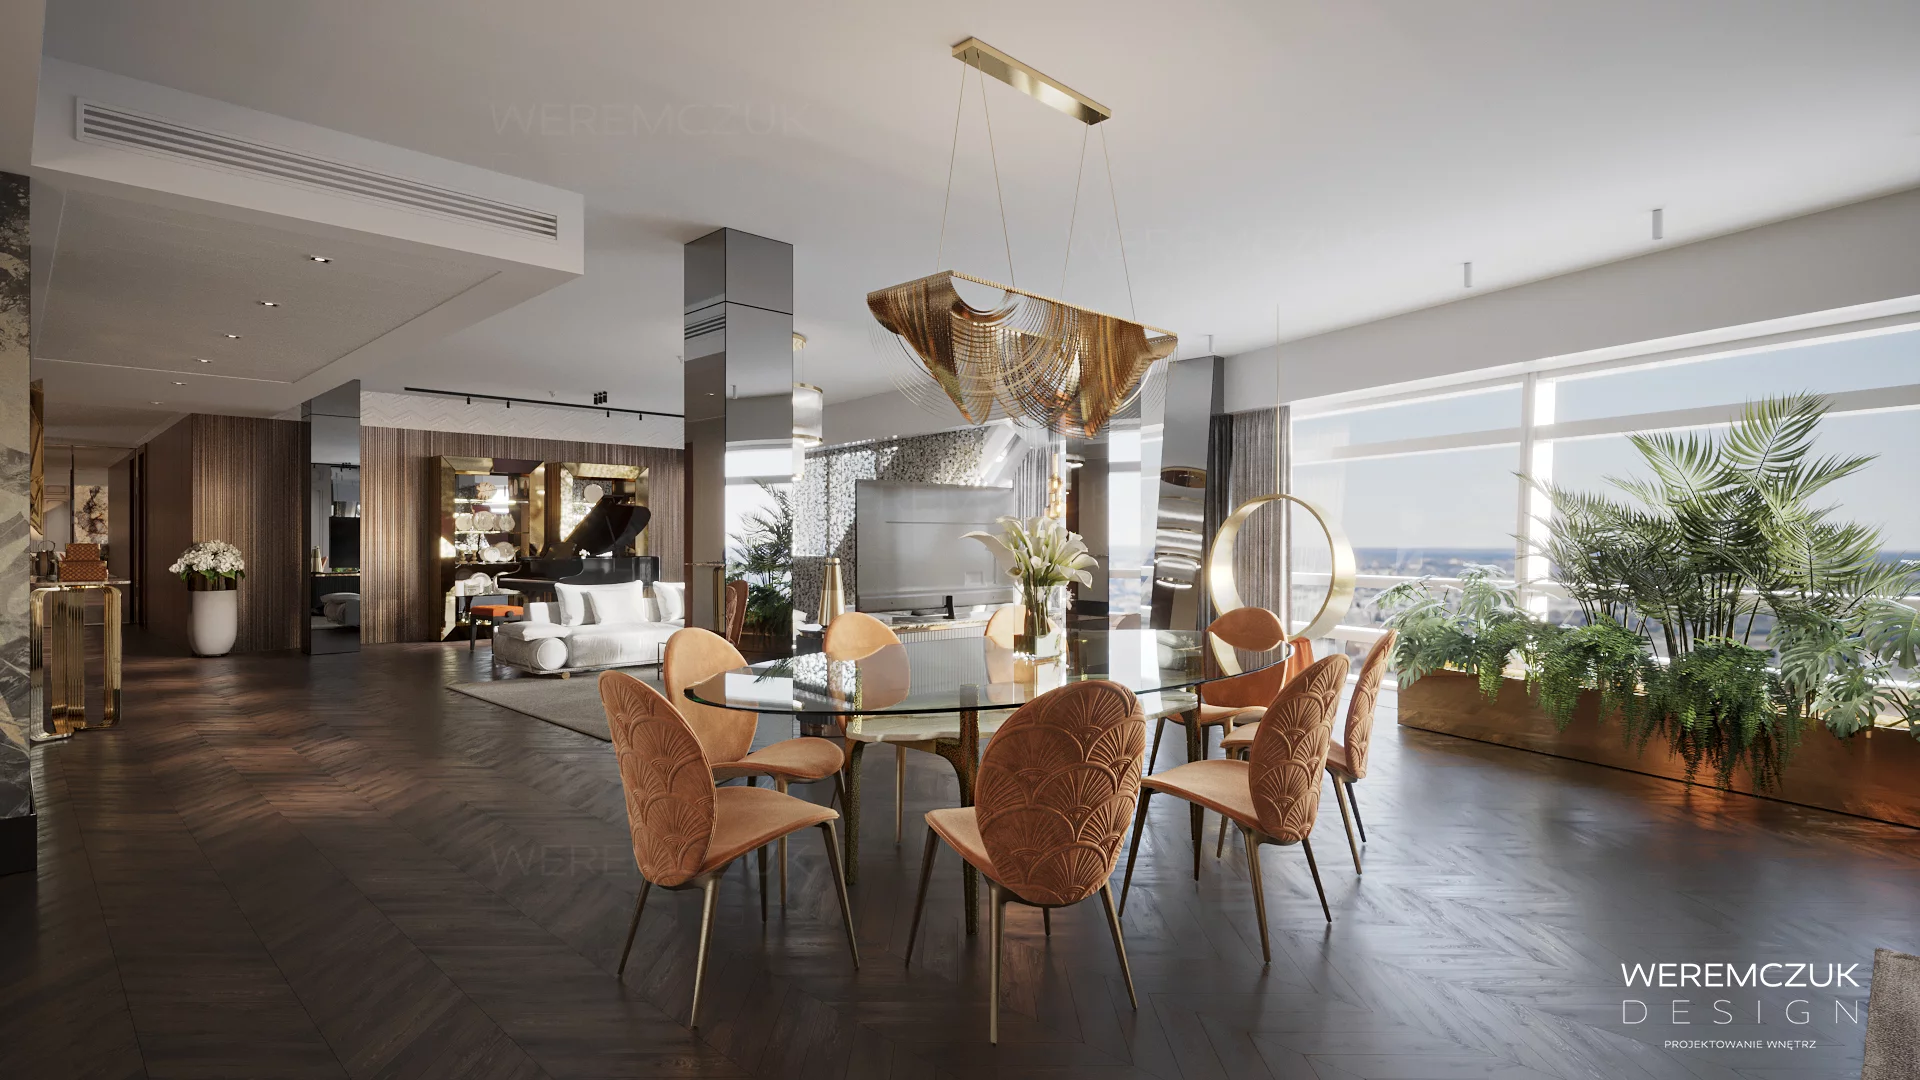 Inspirujące wnętrze projektu Weremczuk Design – ZŁOTA 44 prezentuje wizualizację apartamentu